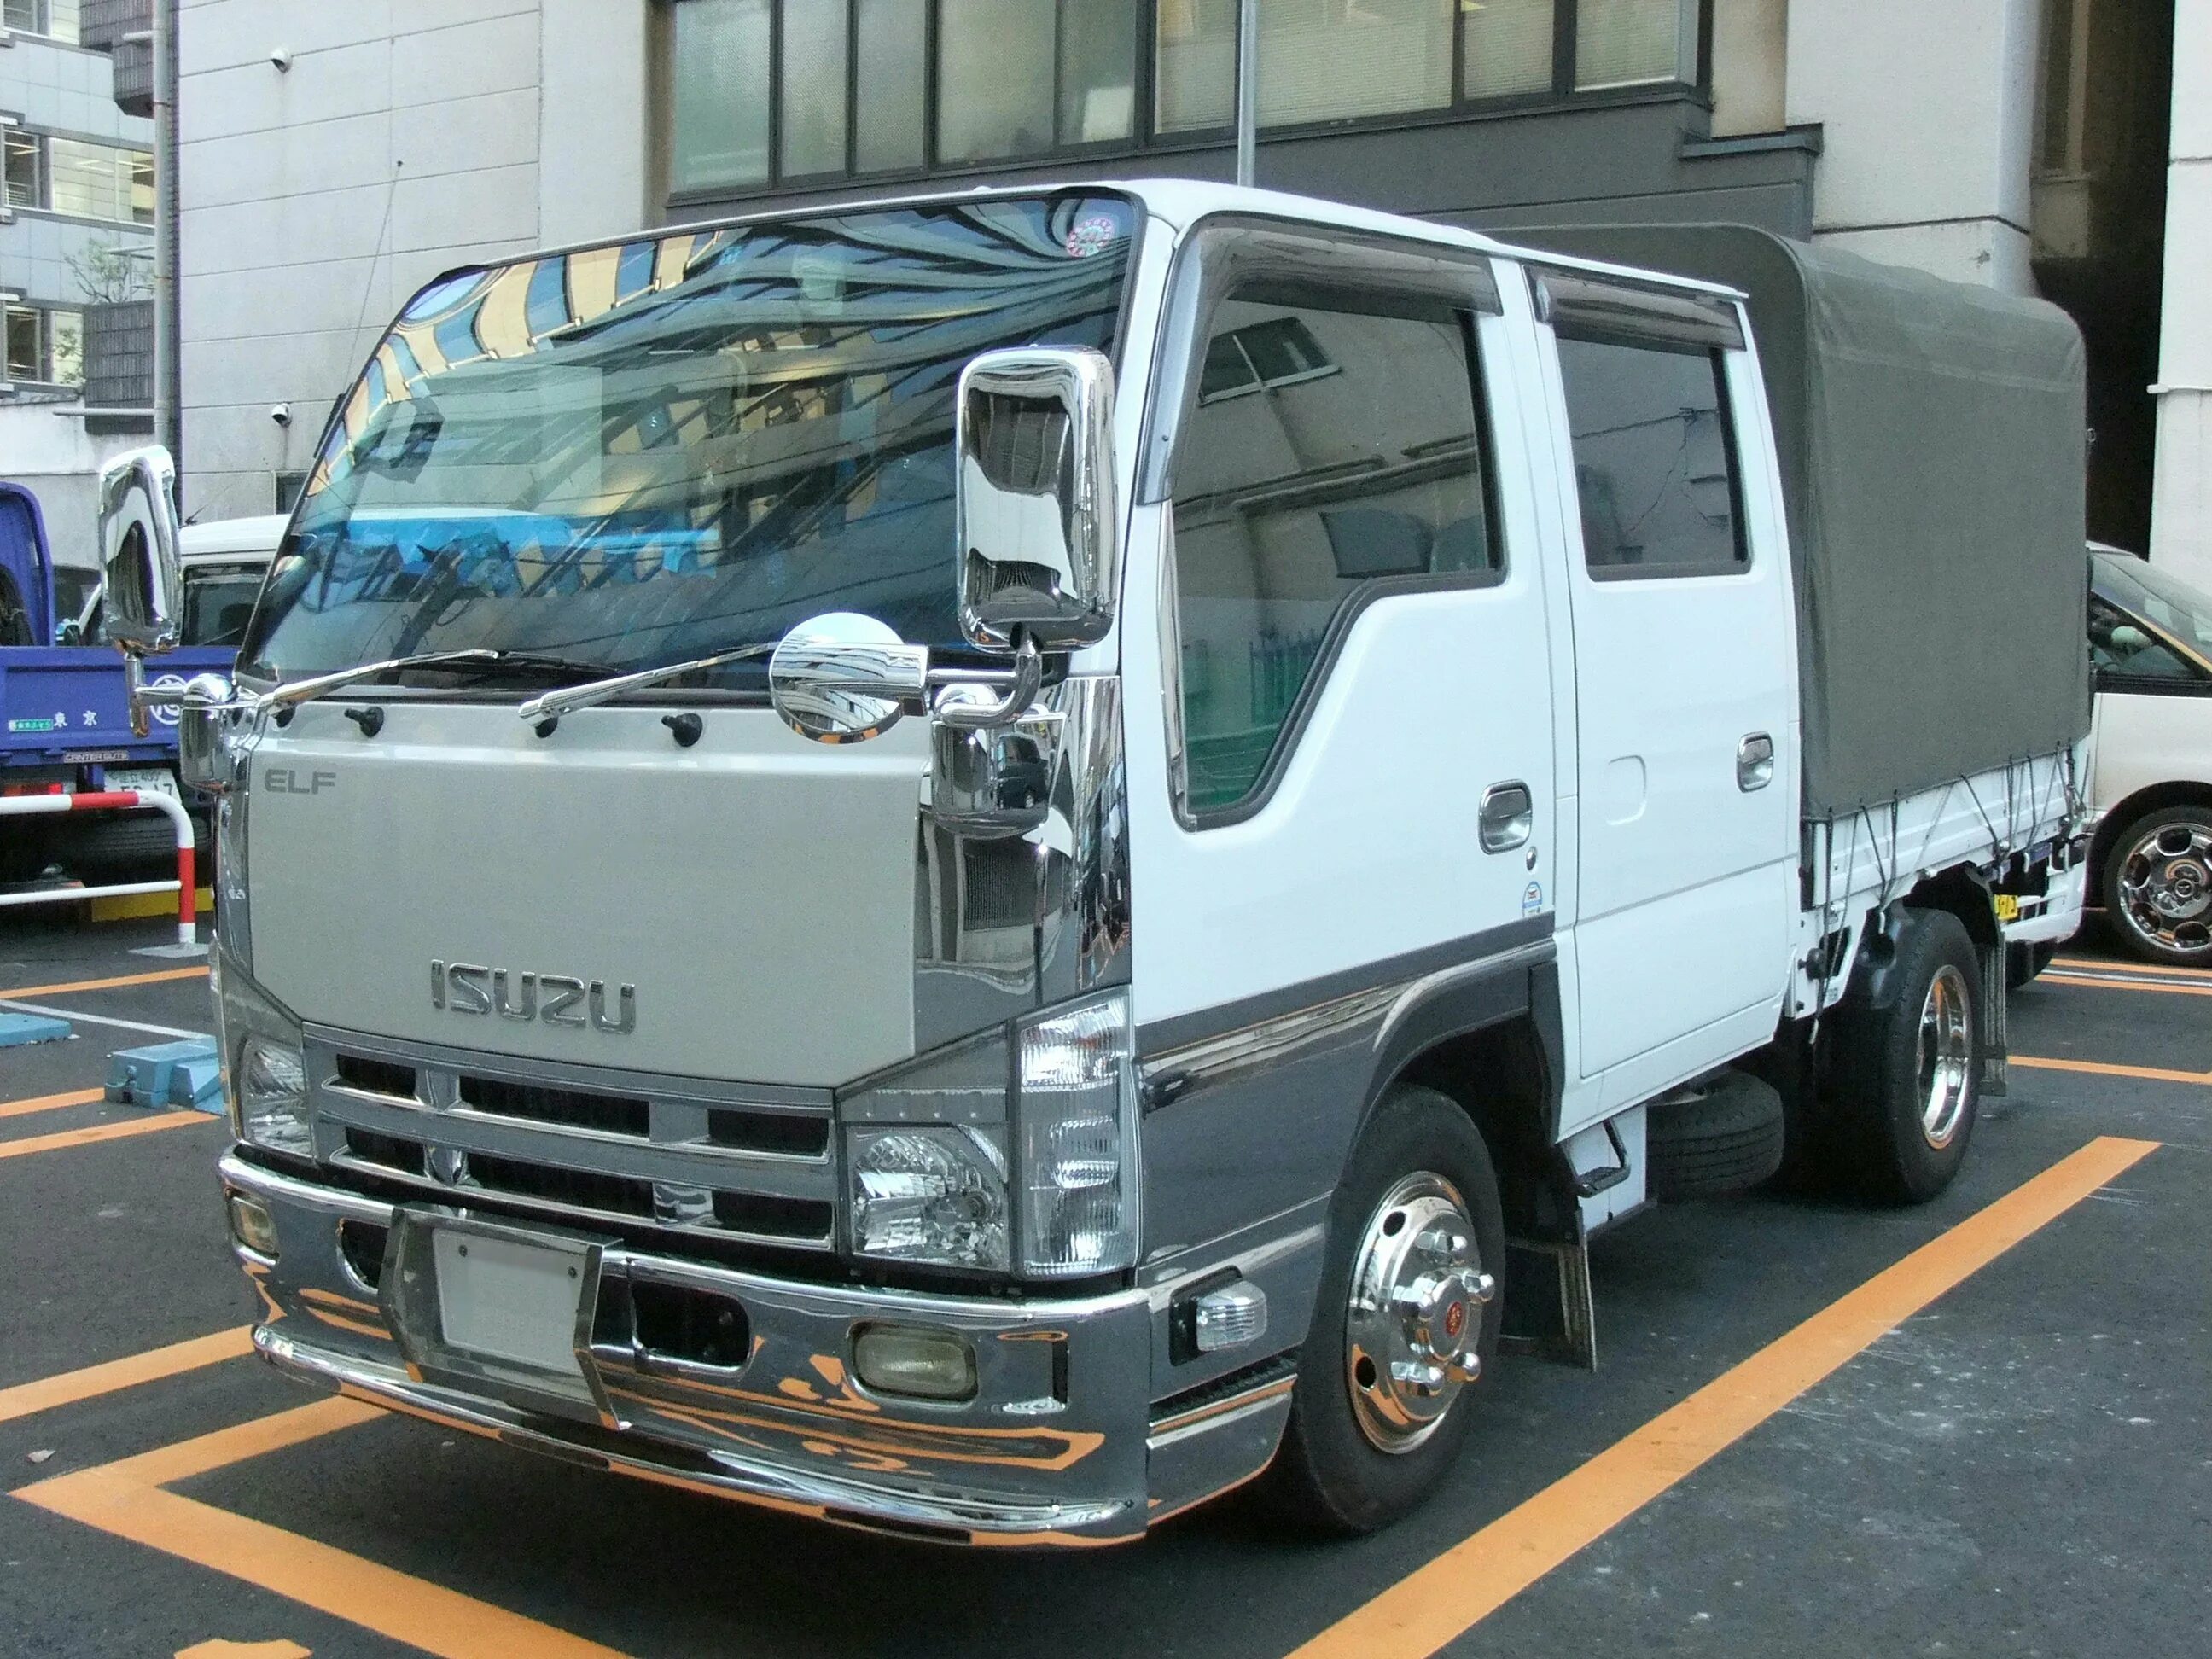 Продажа японских грузовиков. Isuzu Elf 5.5. Isuzu Elf 1,5. Isuzu грузовик 1.5 т. Японский грузовик Исузу Эльф.